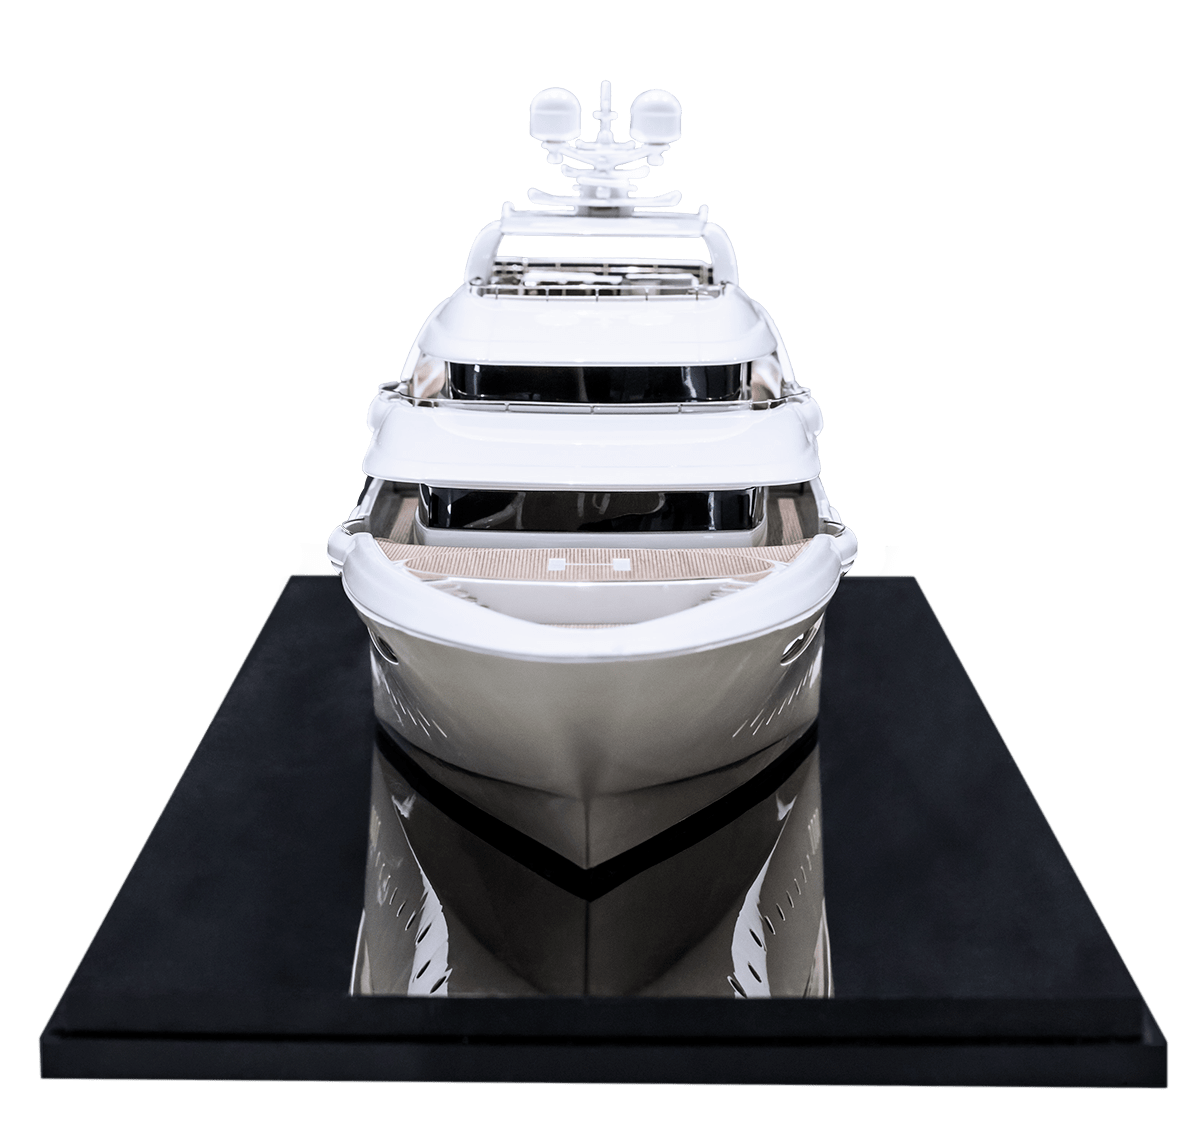 golden yacht model maker group